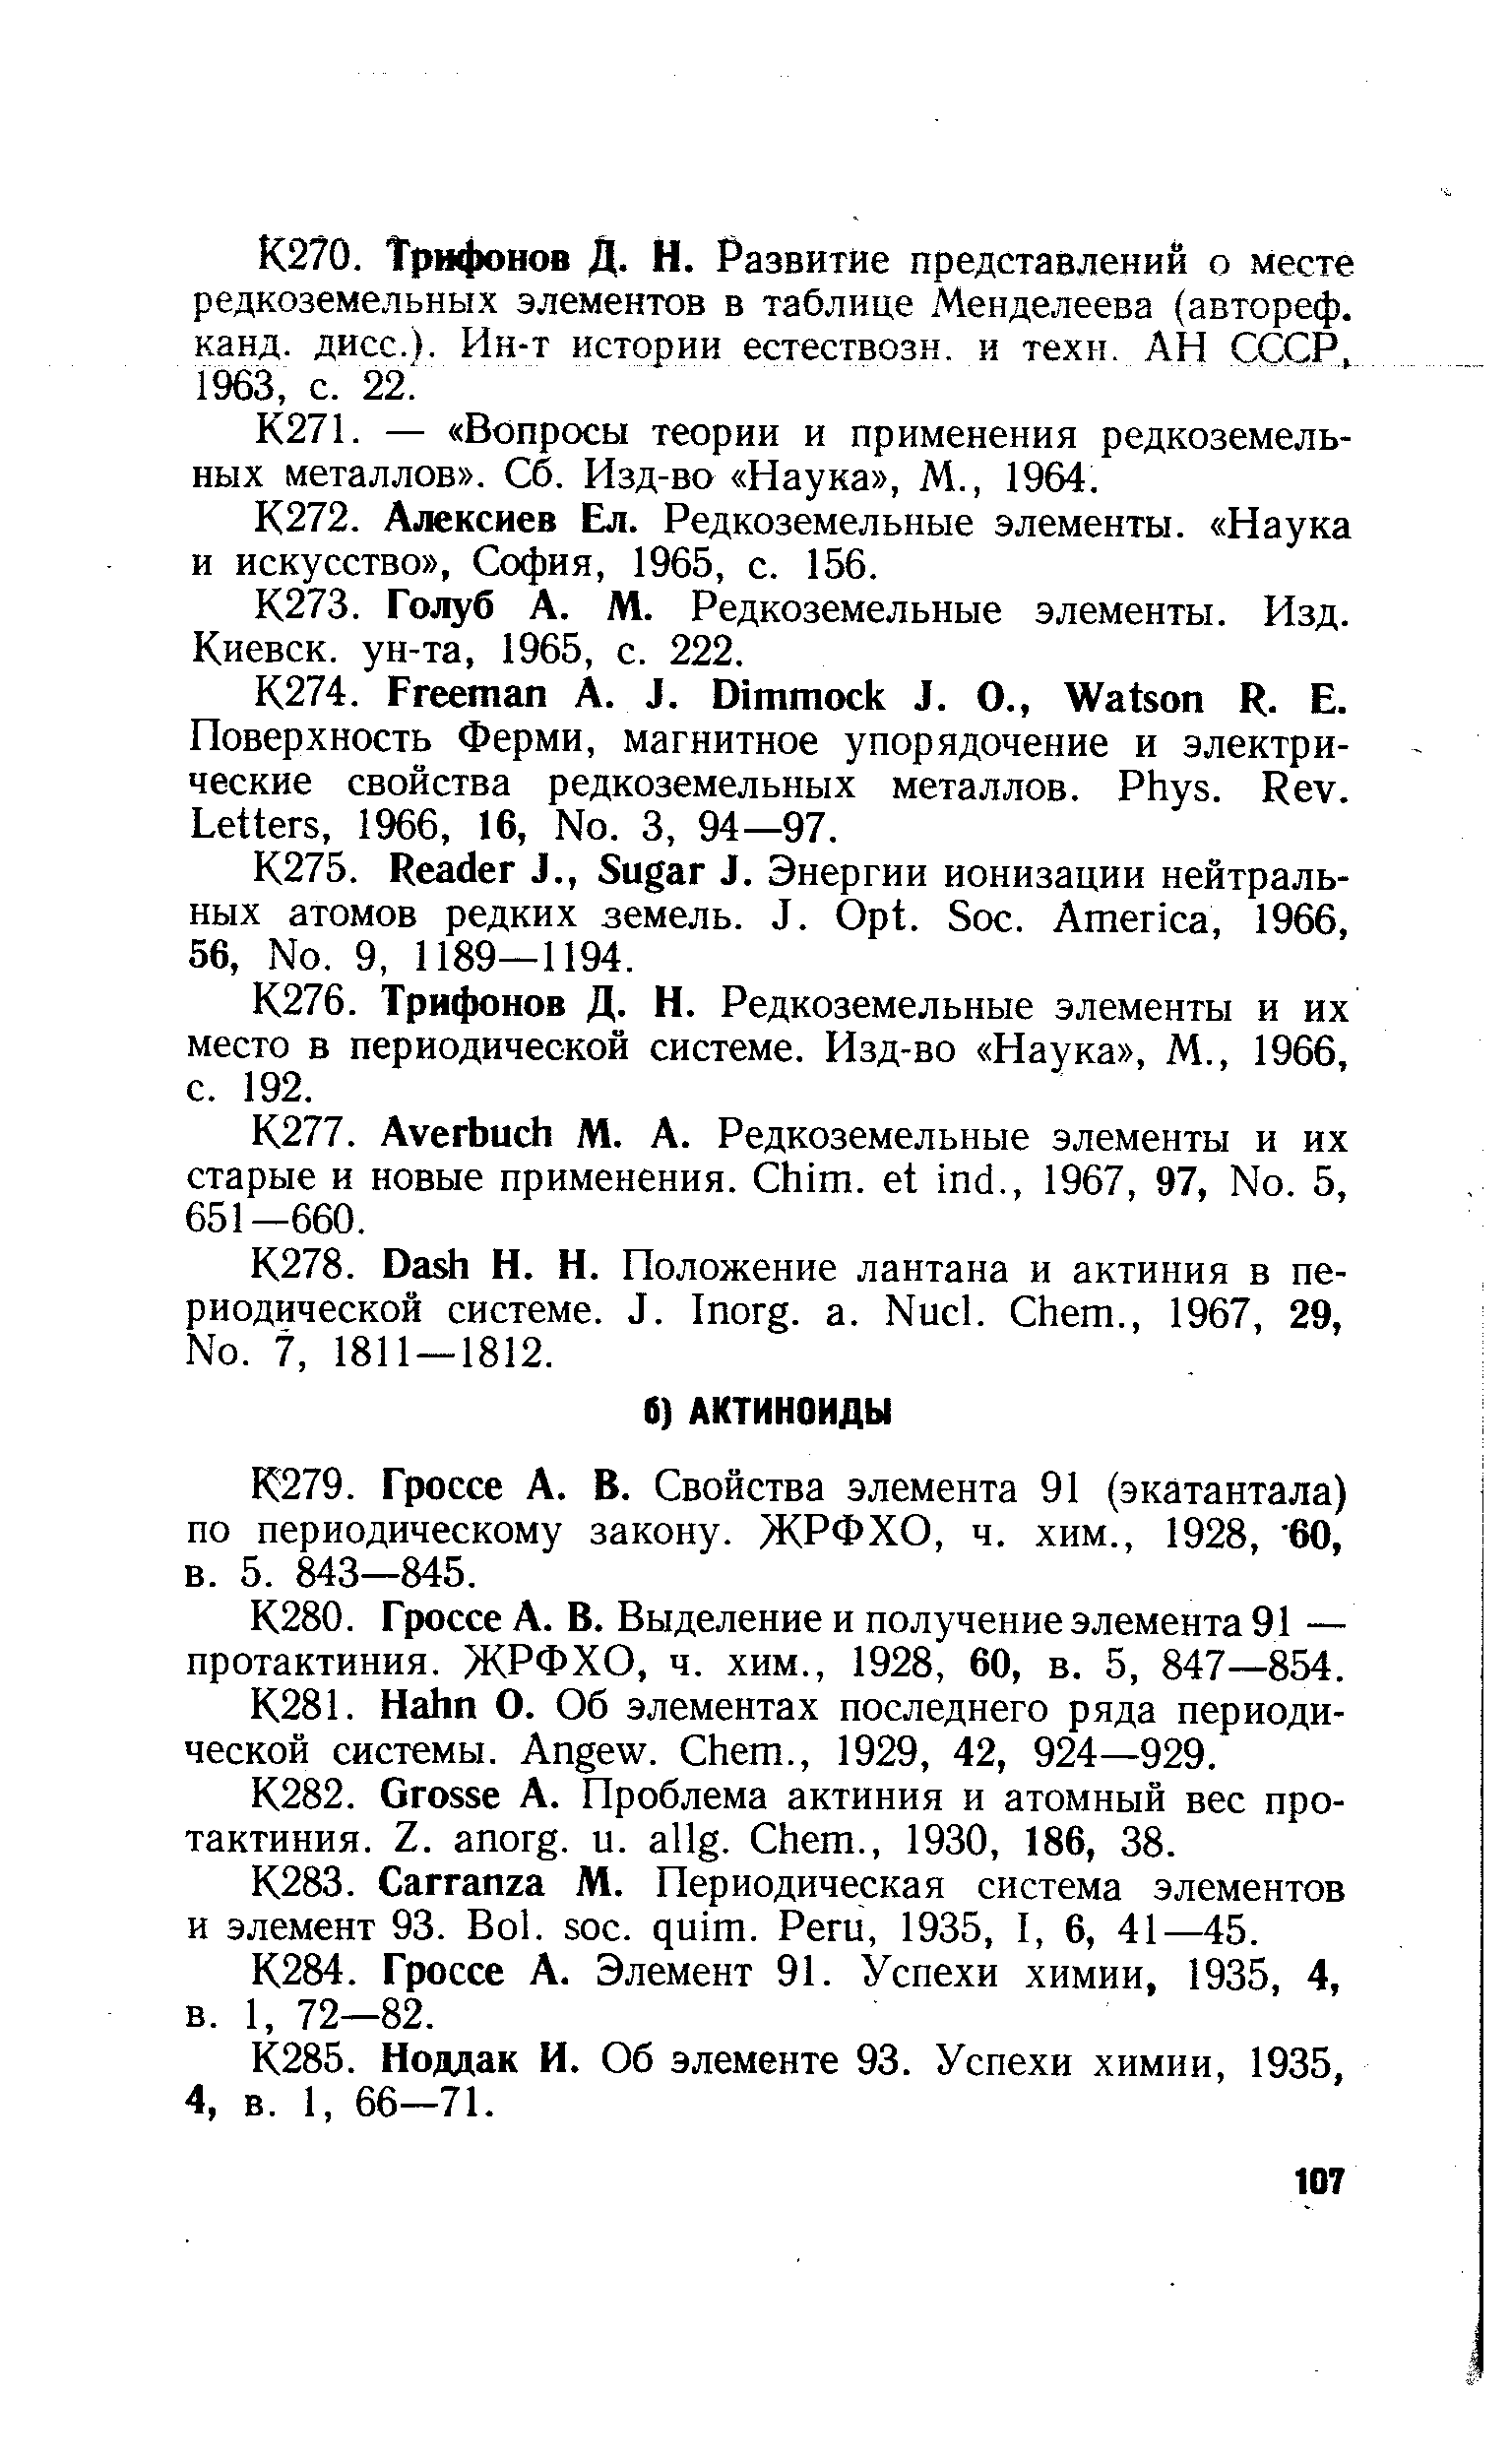 Гроссе А. В. Свойства элемента 91 (экатантала) по периодическому закону. ЖРФХО, ч. хим., 1928, 60, в. 5. 843—845.